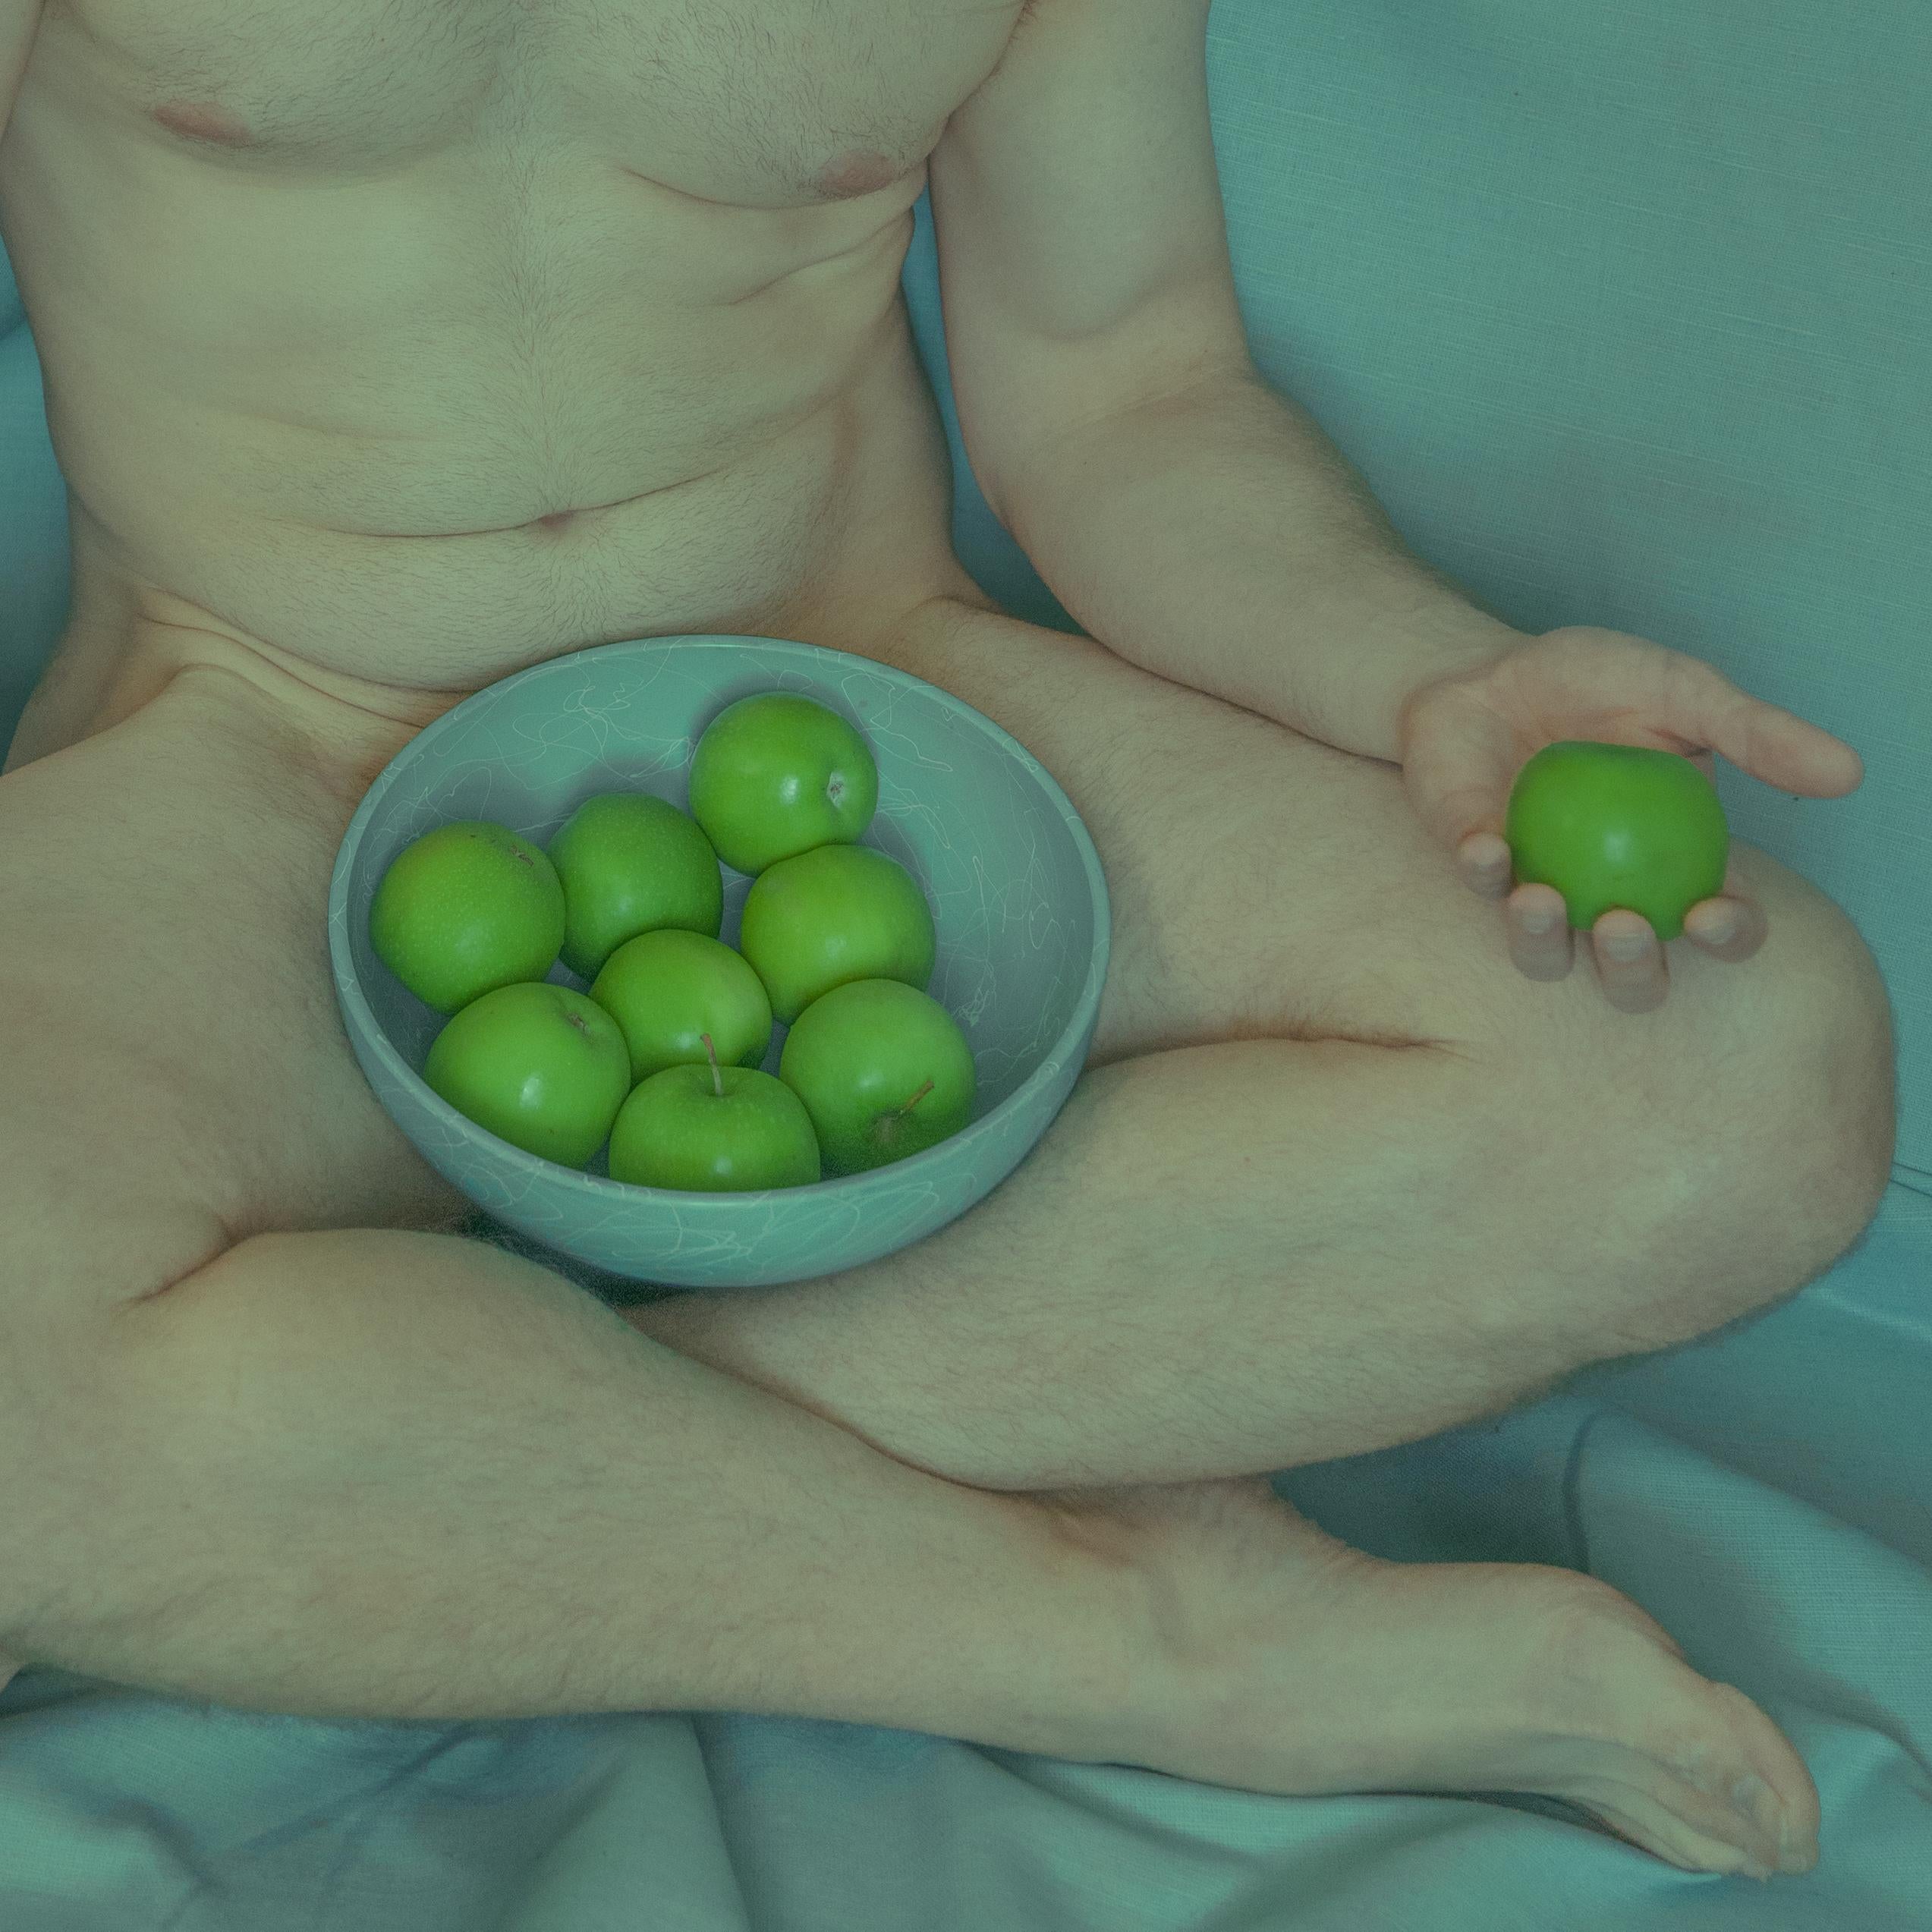 David Pugh Still-Life Photograph – Untitled (Selbstporträt, Nude, Äpfel, Schale, Grün, Teal, Haut, Macht, Desire)